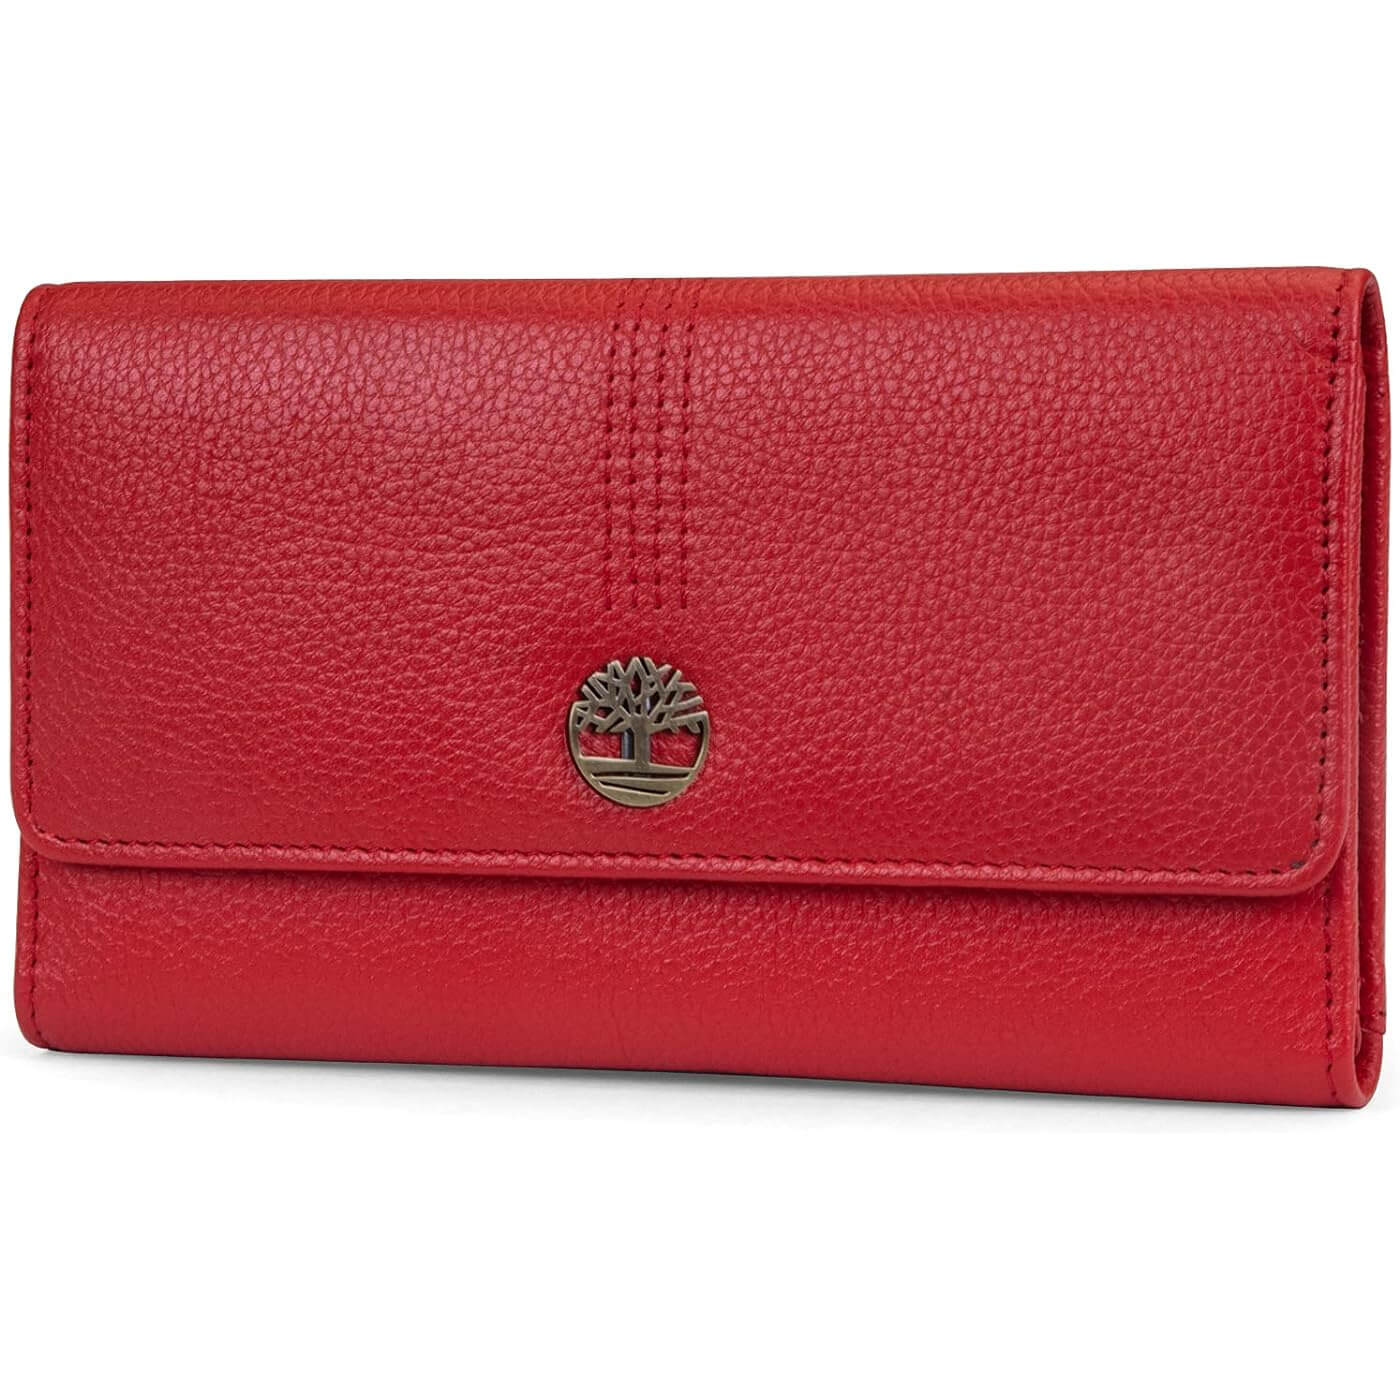 Кошелек-клатч из зернистой кожи Timberland RFID Flap Organizer, красный женский кошелек из натуральной кожи дамский удлиненный клатч с двойной молнией и rfid кредитница бумажники для телефона